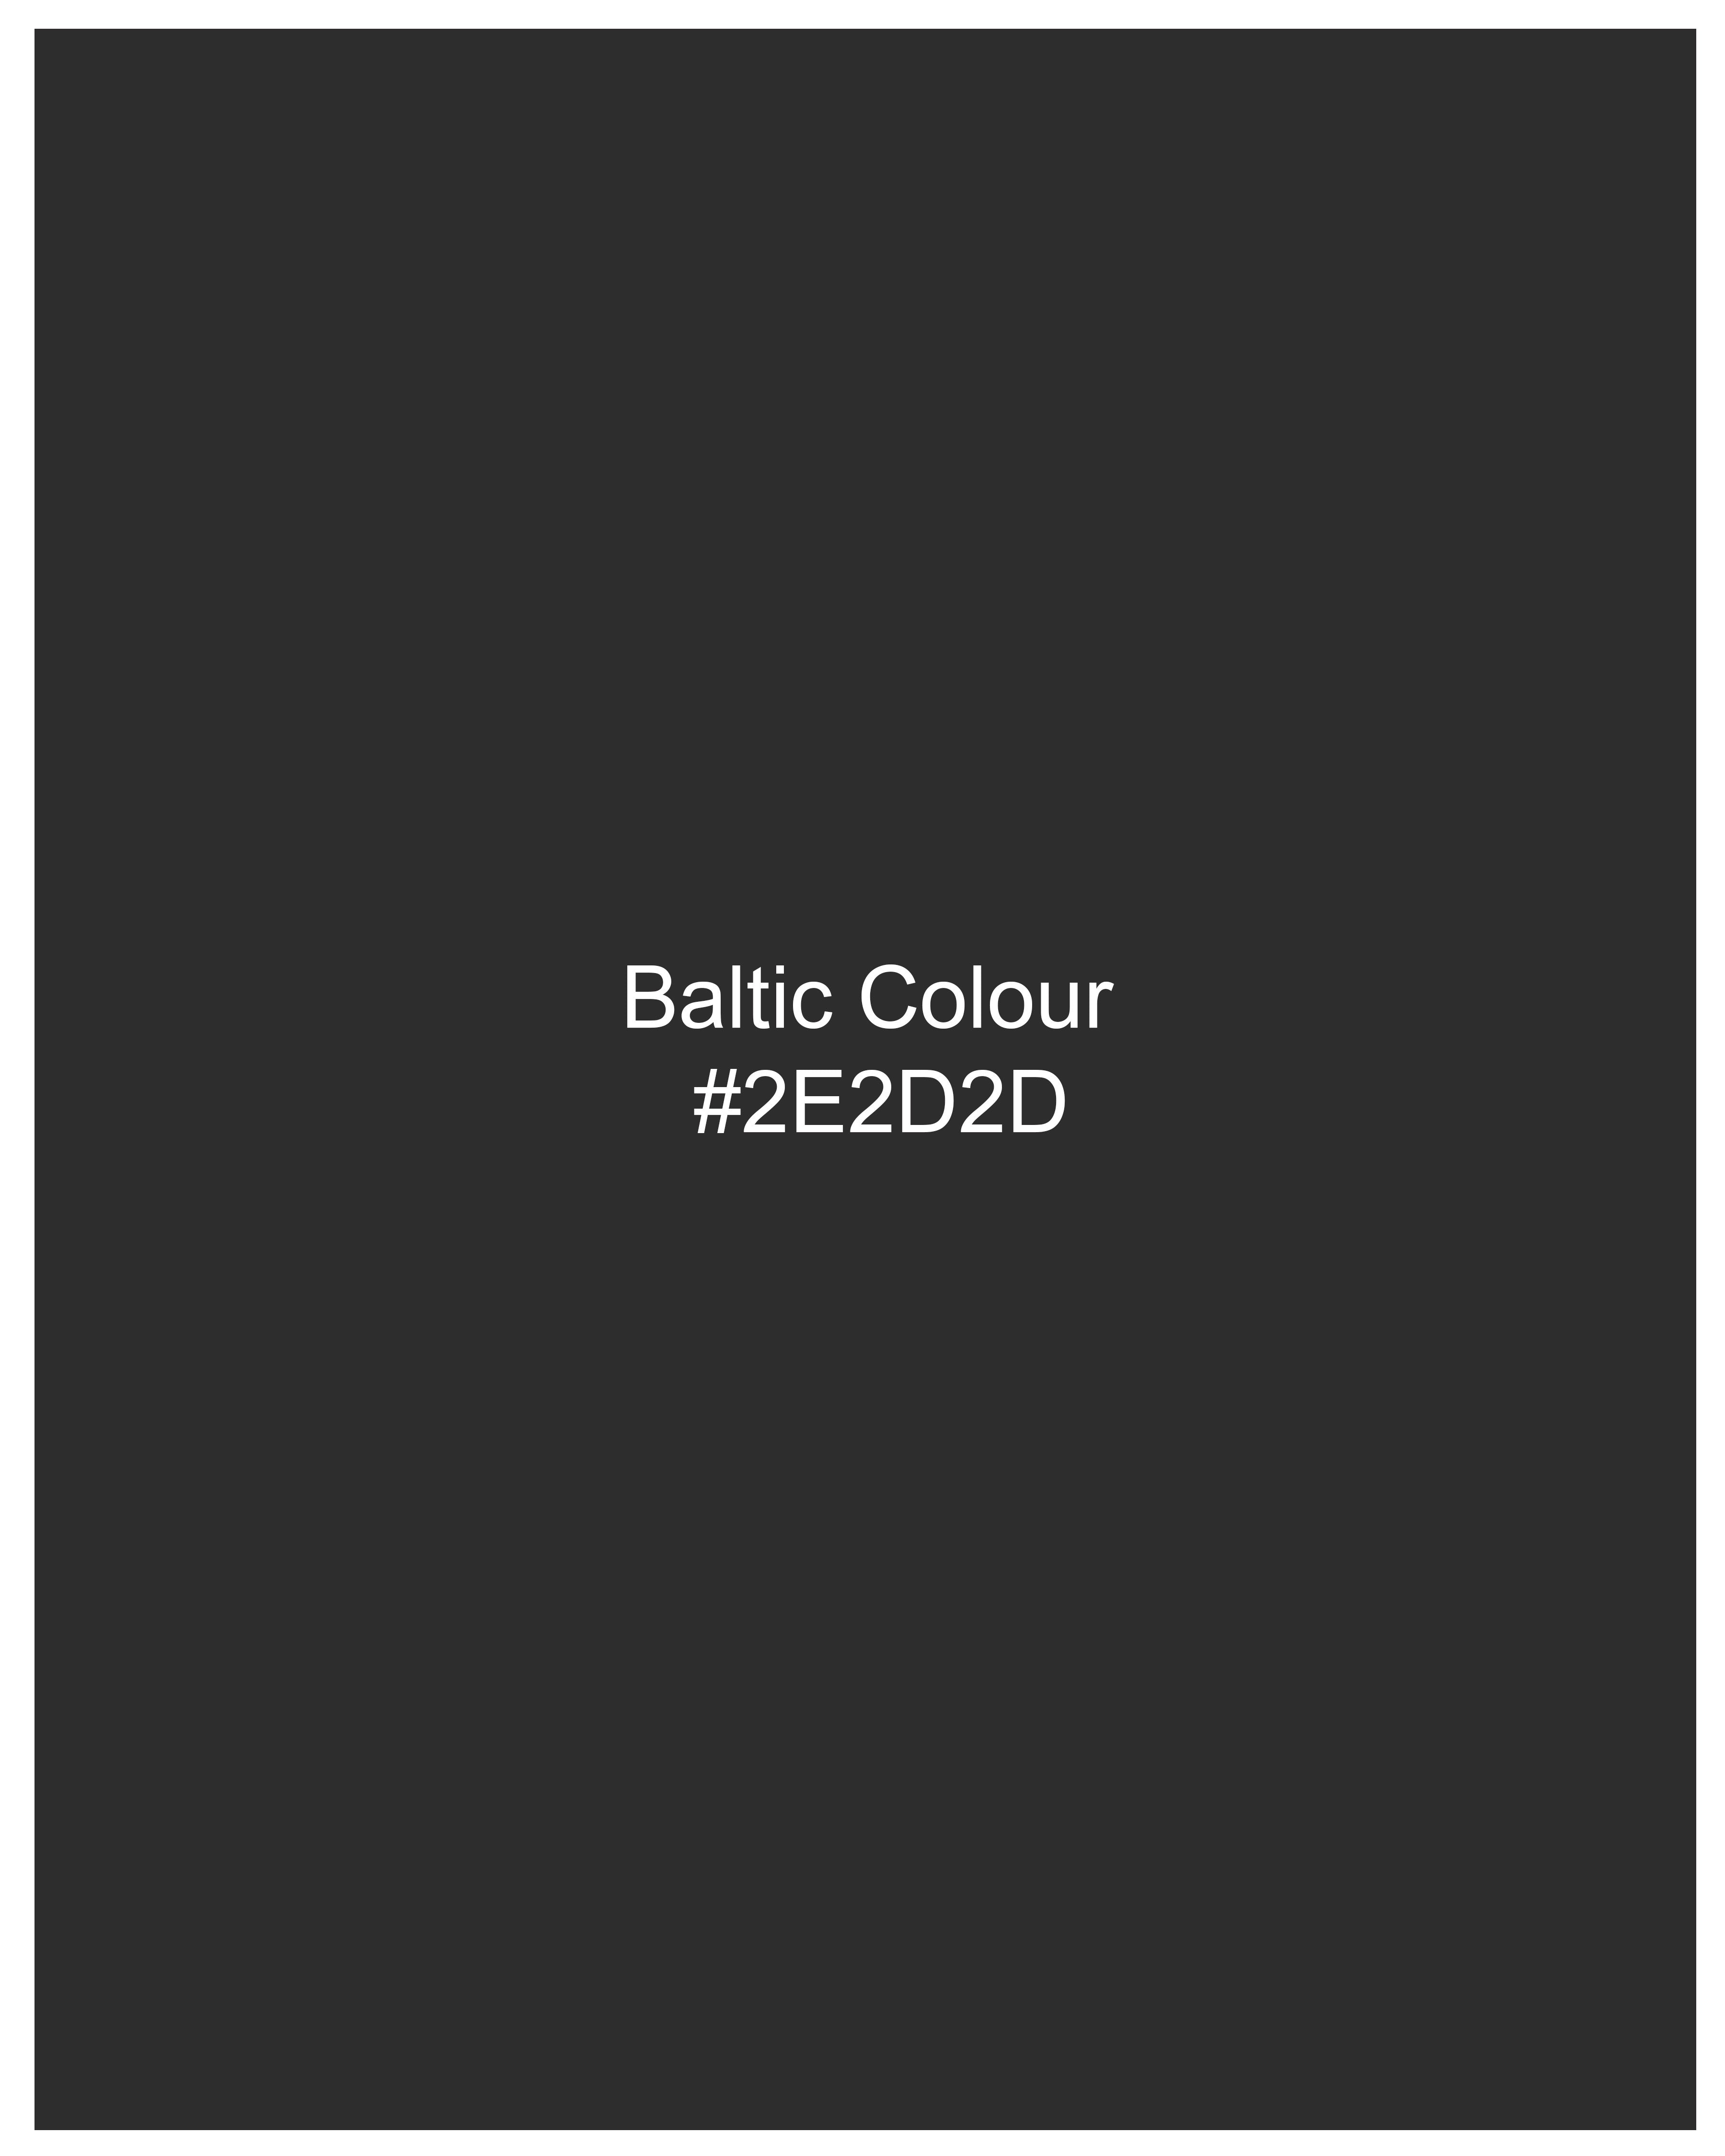 Baltic Black Windowpane Pant T2311-28, T2311-30, T2311-32, T2311-34, T2311-36, T2311-38, T2311-40, T2311-42, T2311-44